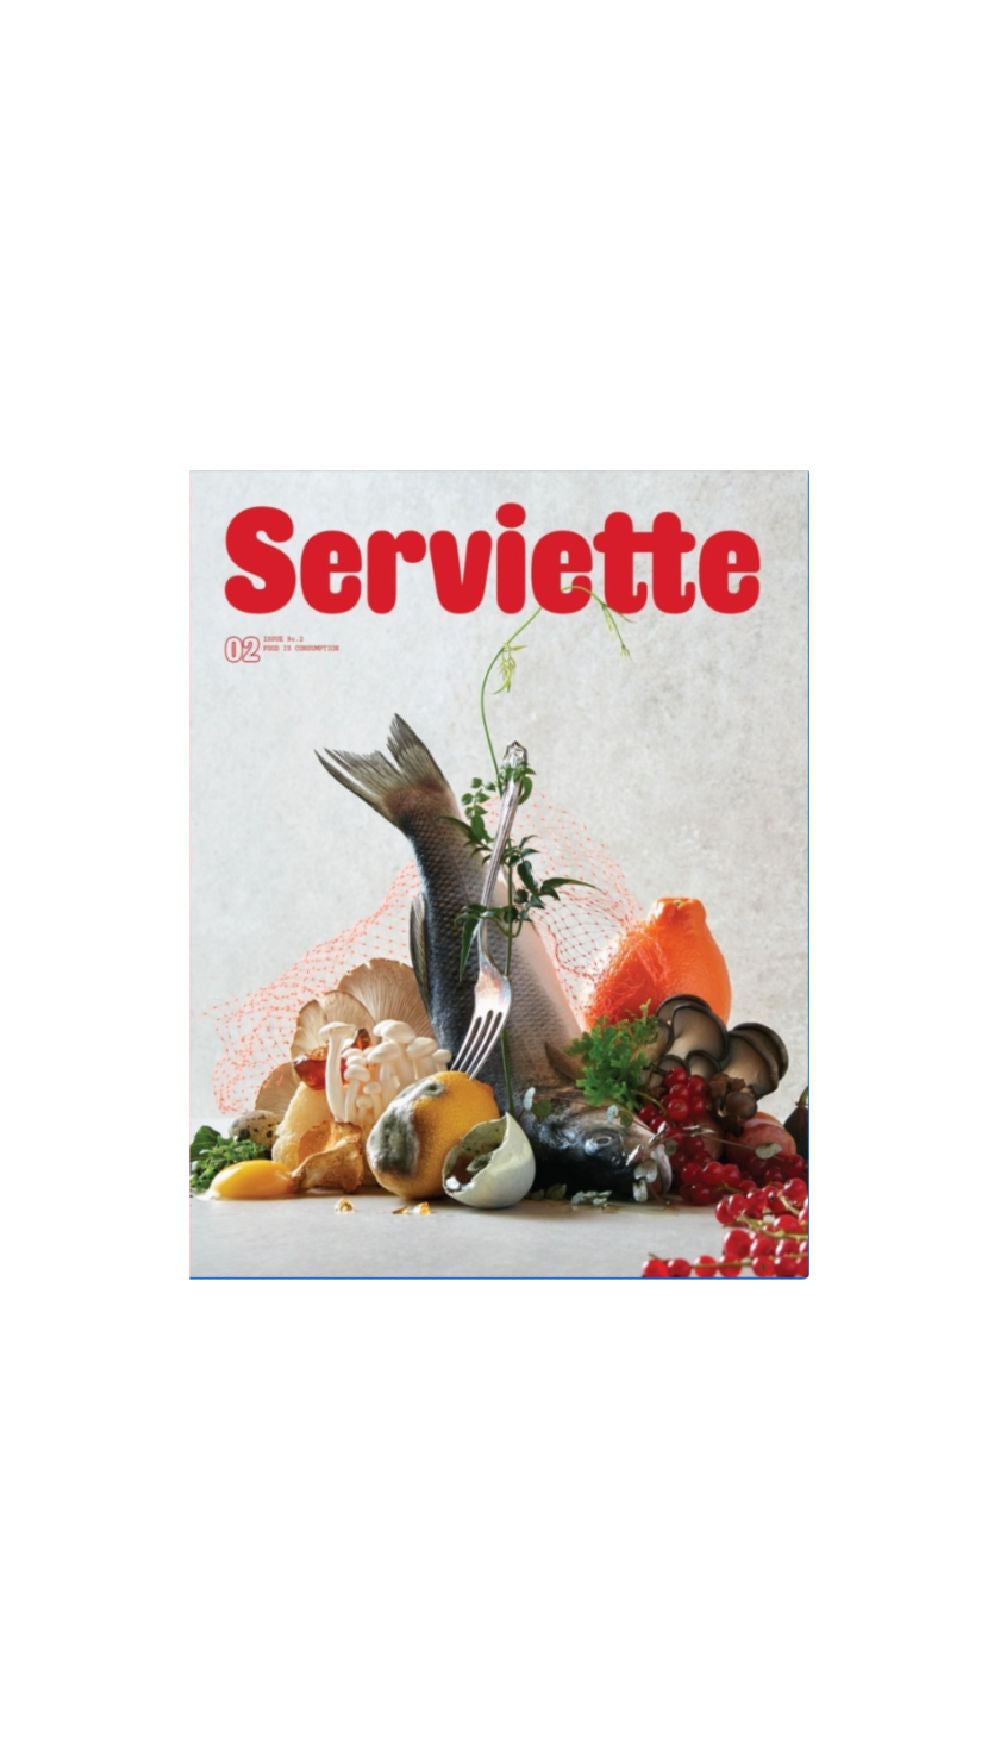 Serviette Magazine